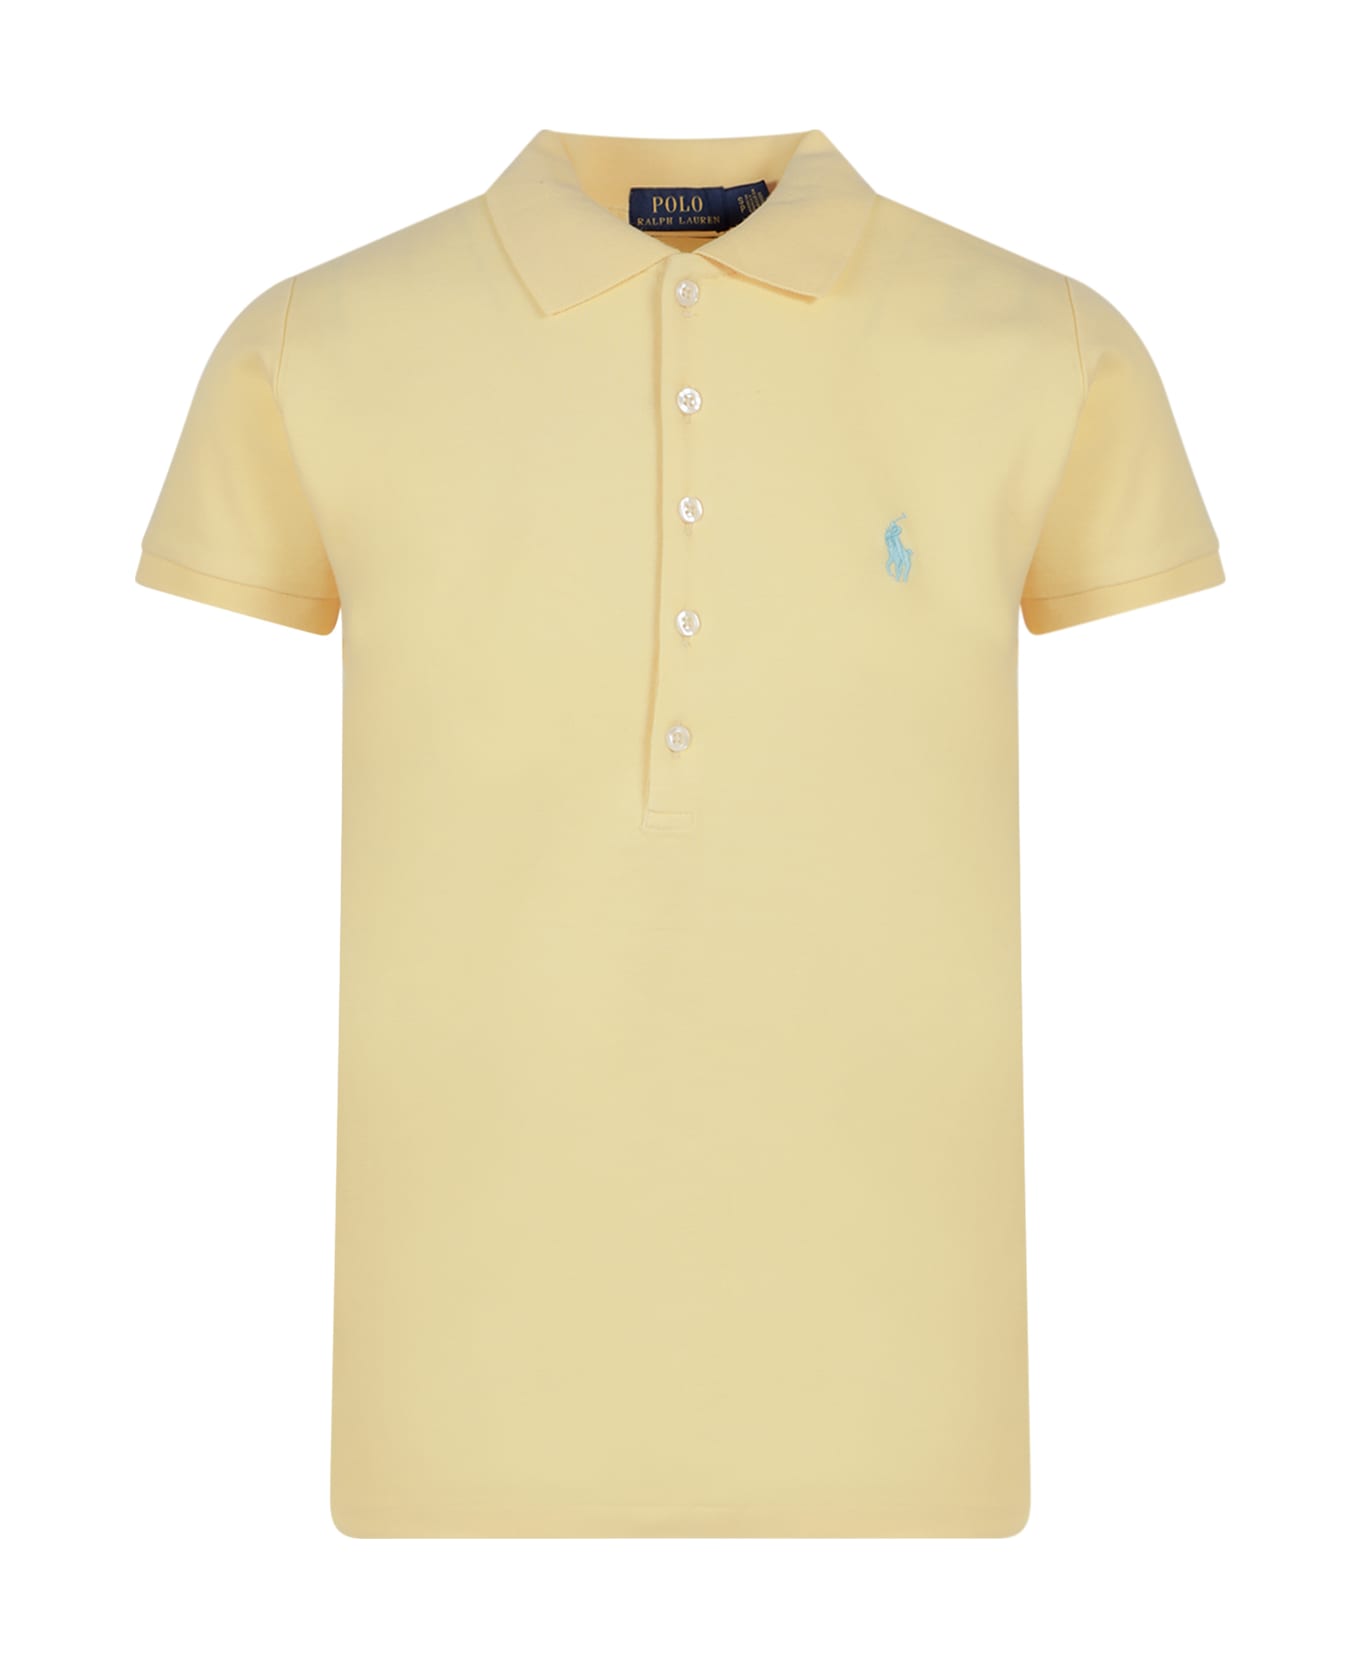 Polo Ralph Lauren 'shop' Cotton Polo Shirt - Yellow